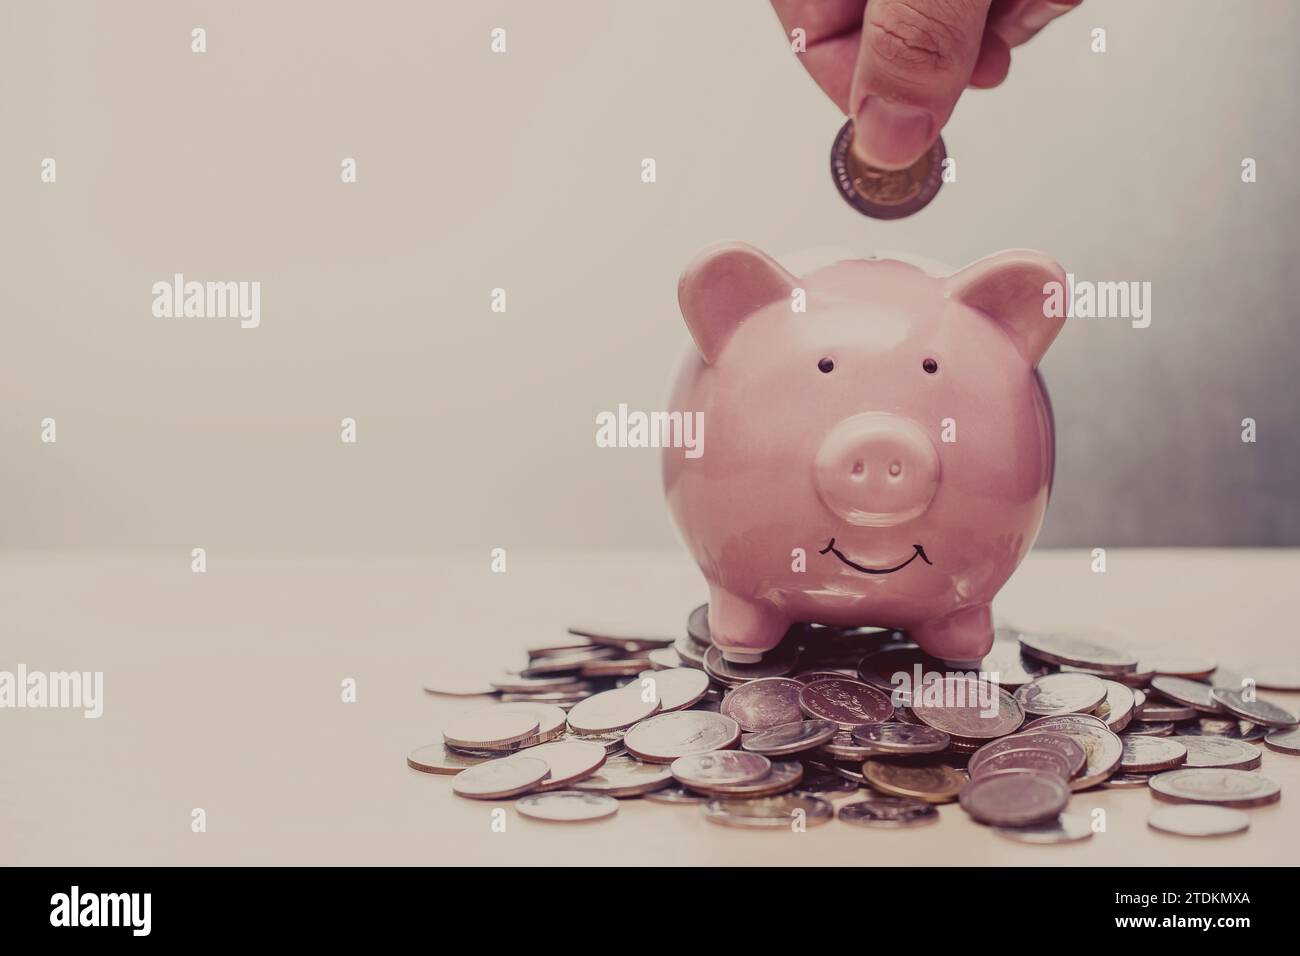 Hand Putting Coin to Piggy Bank Vintage Farbton für Business Banking Finance Konzept Werbungshintergrund. Stockfoto